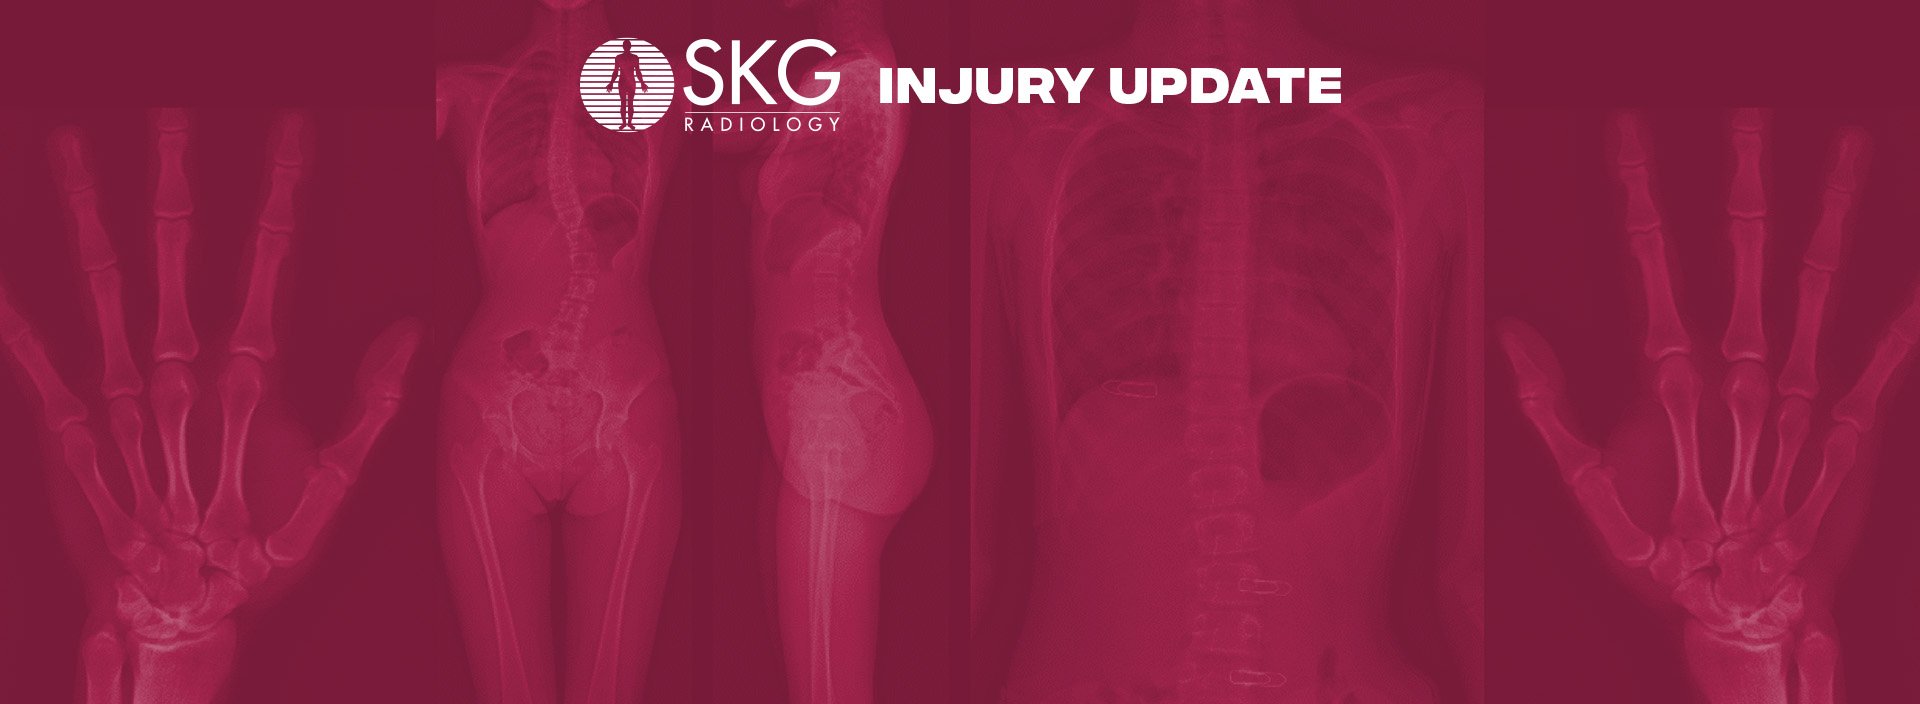 SKG Injury Update